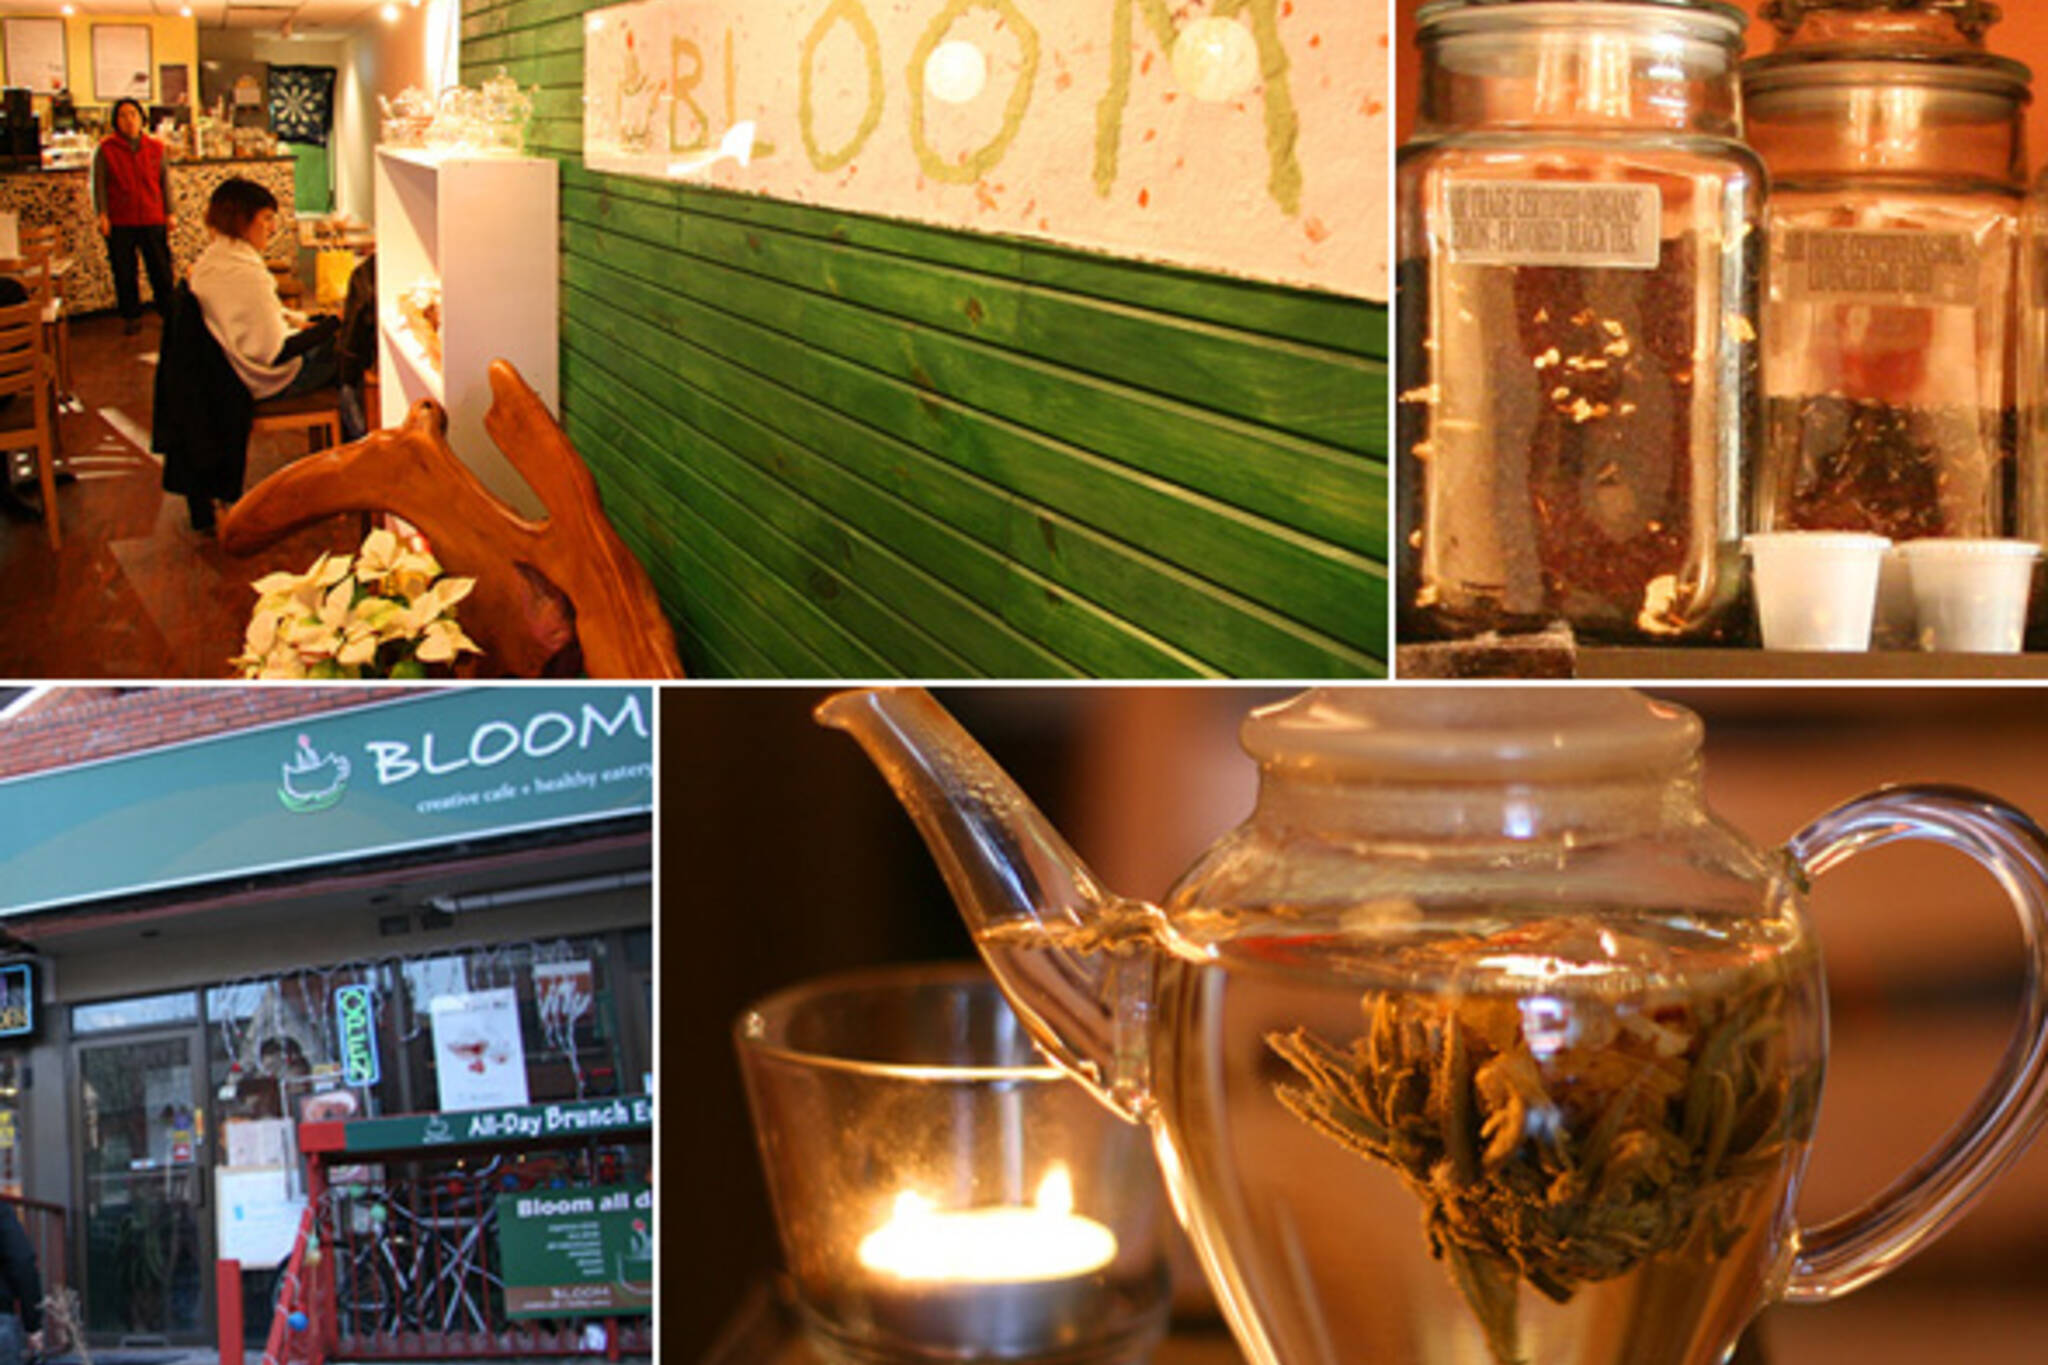 Bloom Cafe